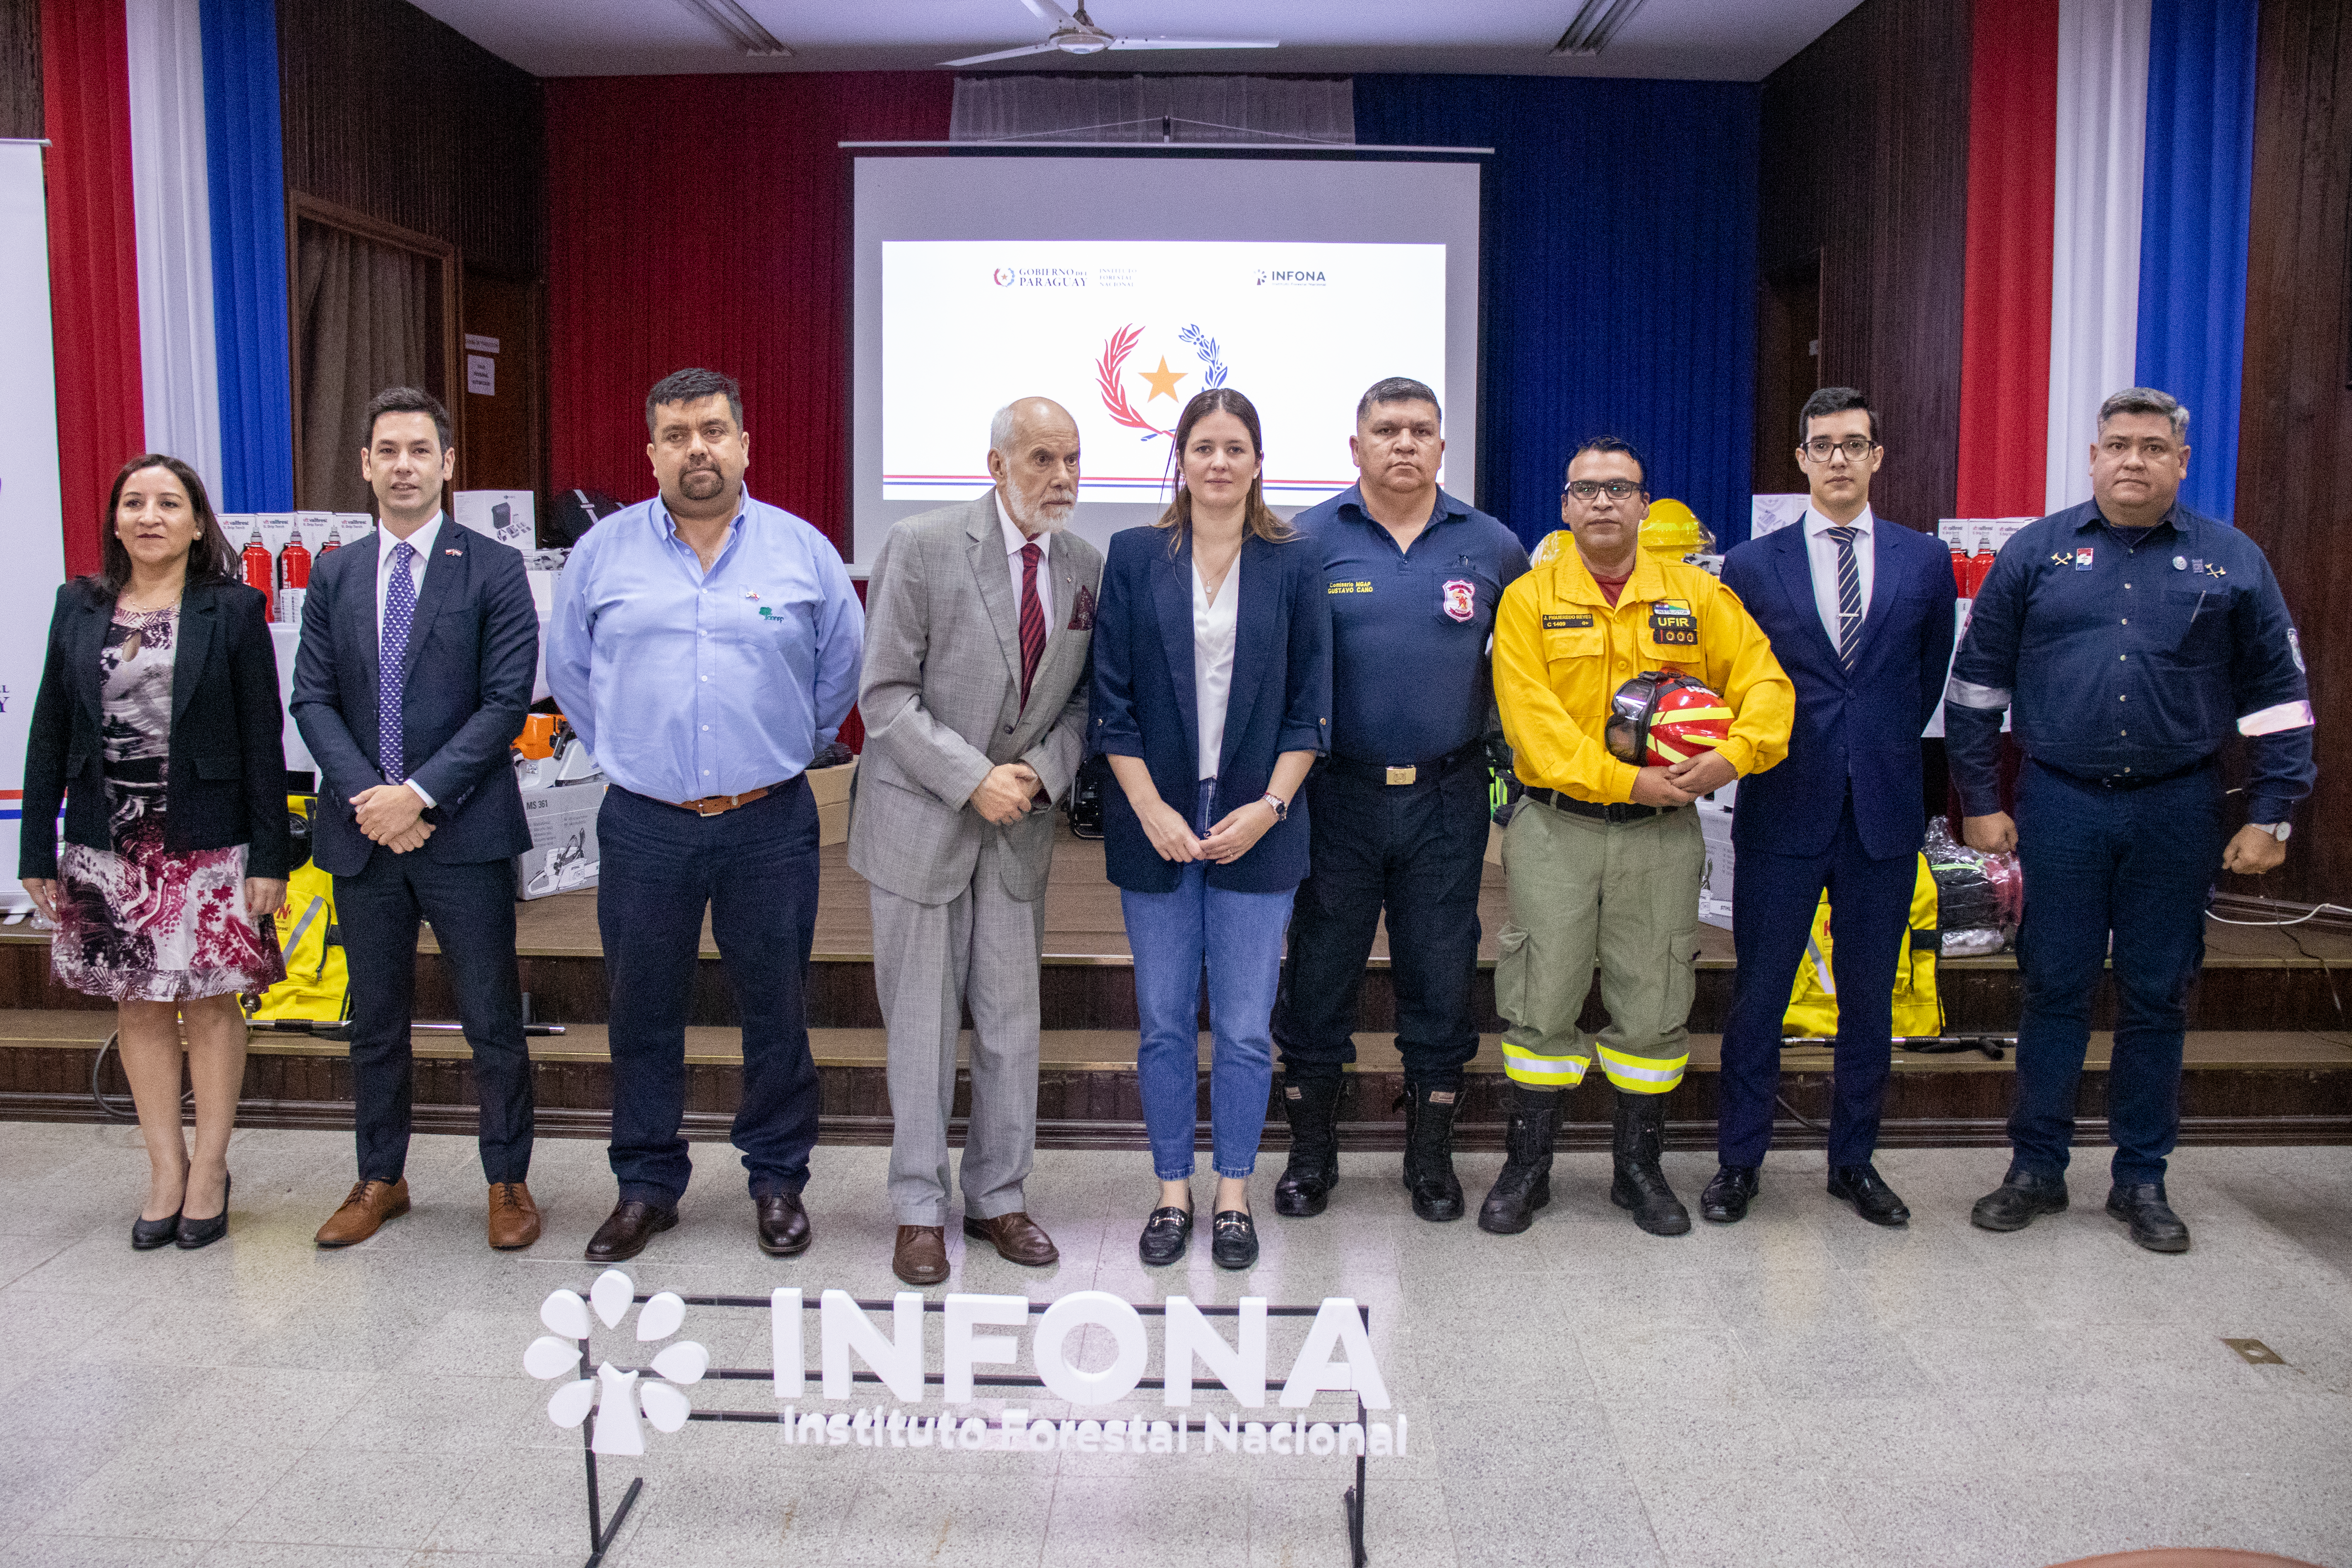 Proyecto de Cooperación y Asistencia técnica en protección contra incendios forestales, que reafirma el compromiso de apoyo entre Paraguay, Chile y Canadá